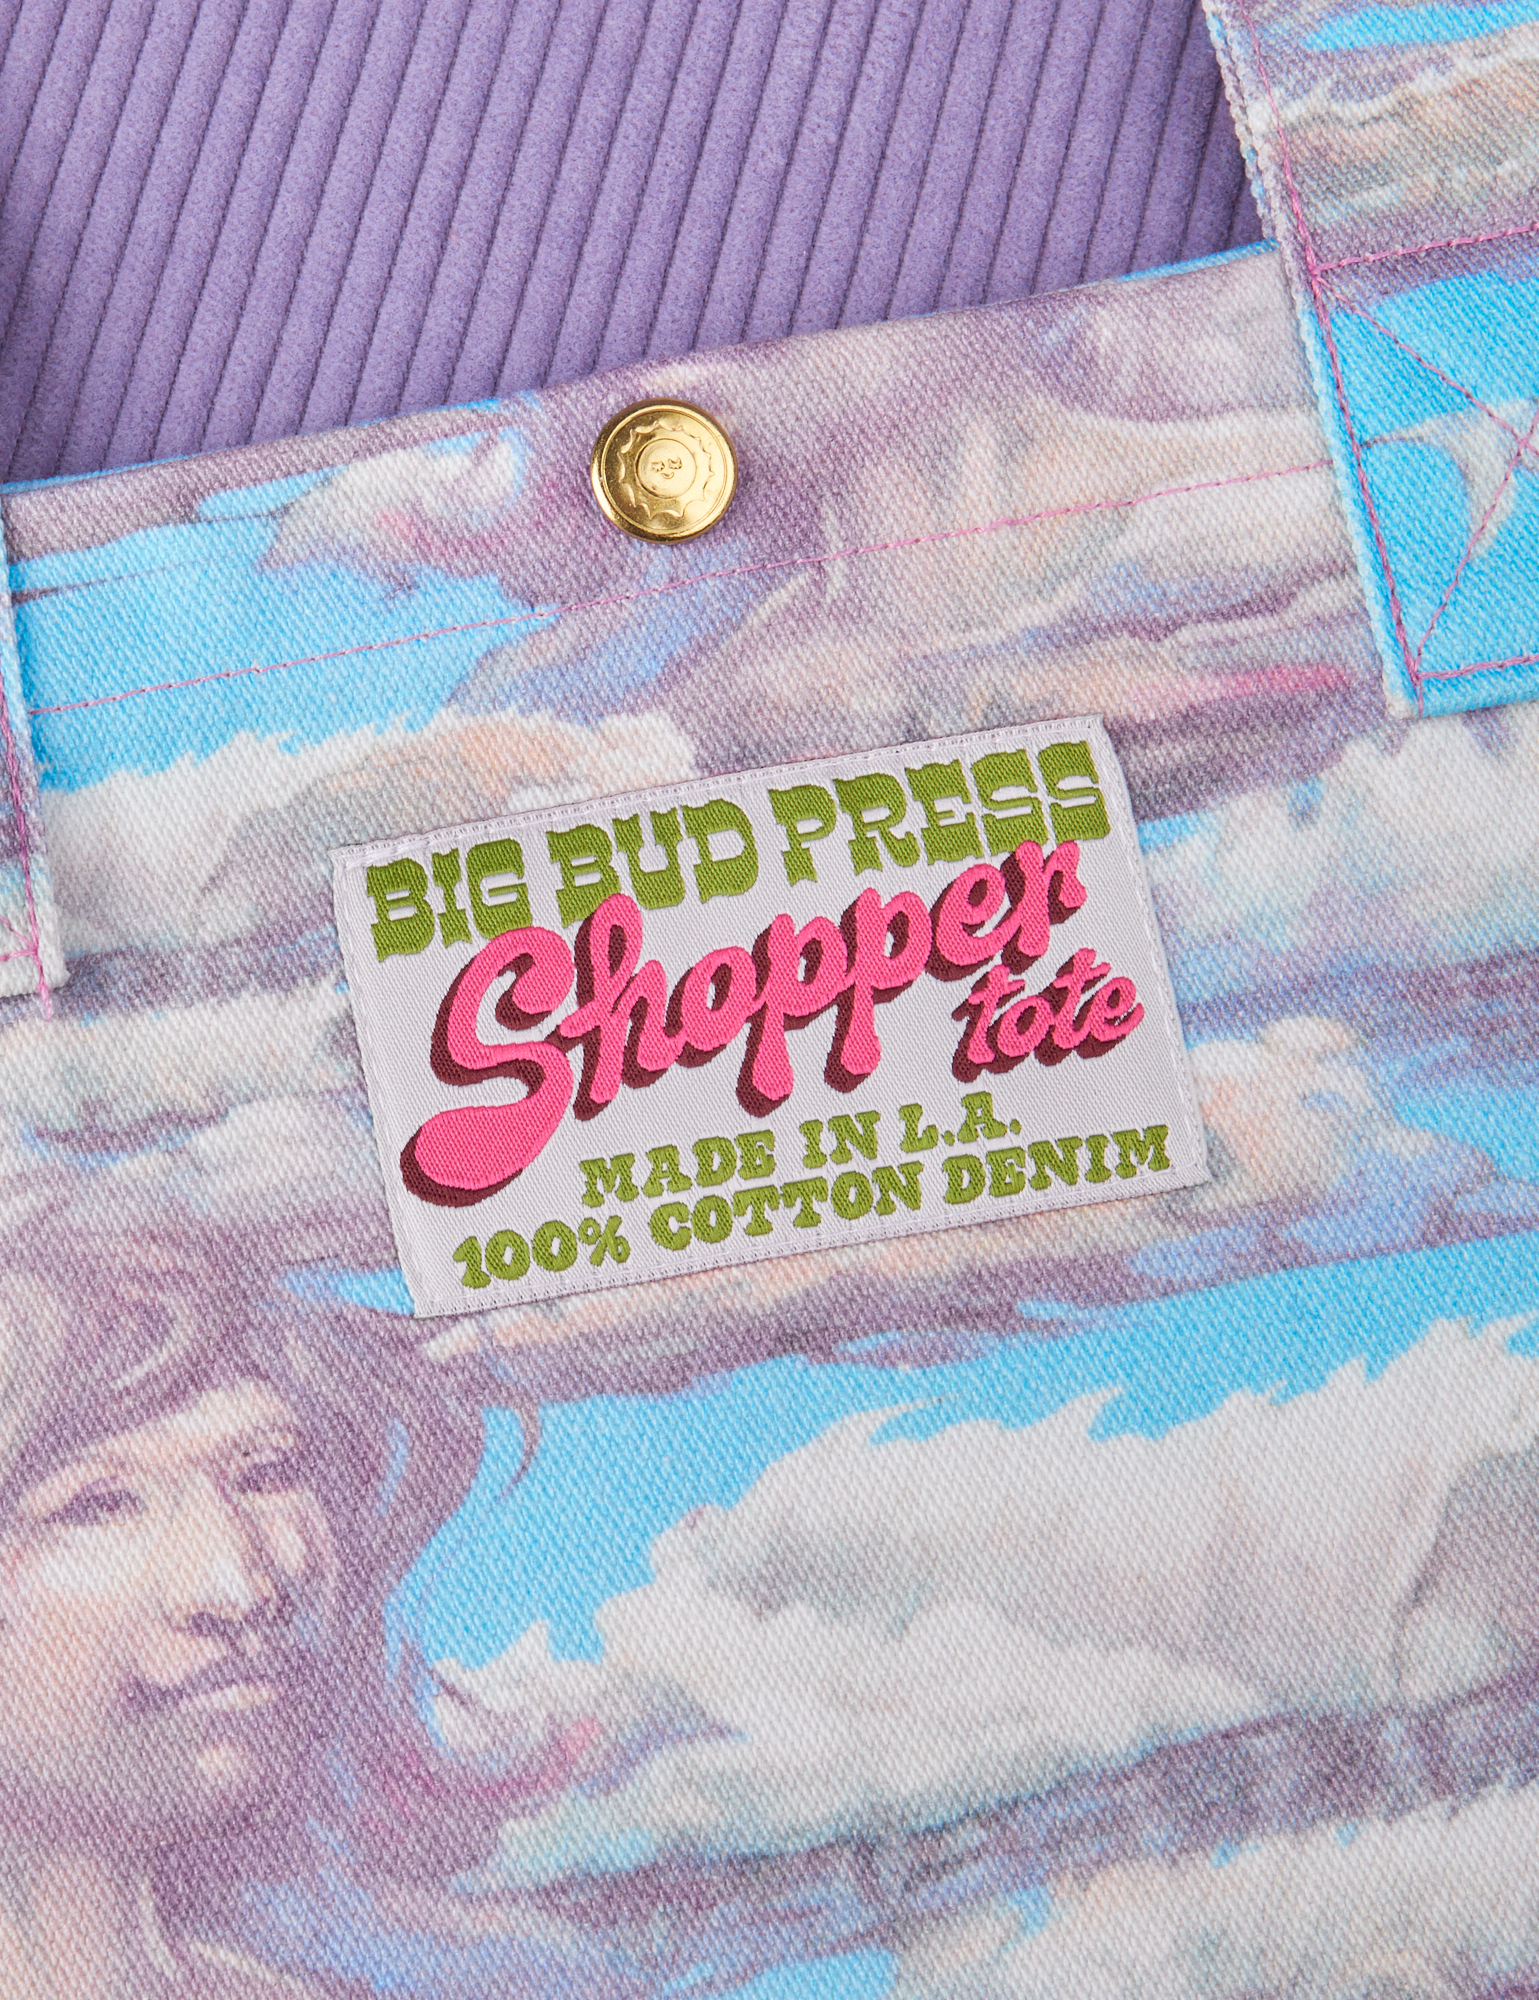 Cloud Kingdom Shopper Tote label close up